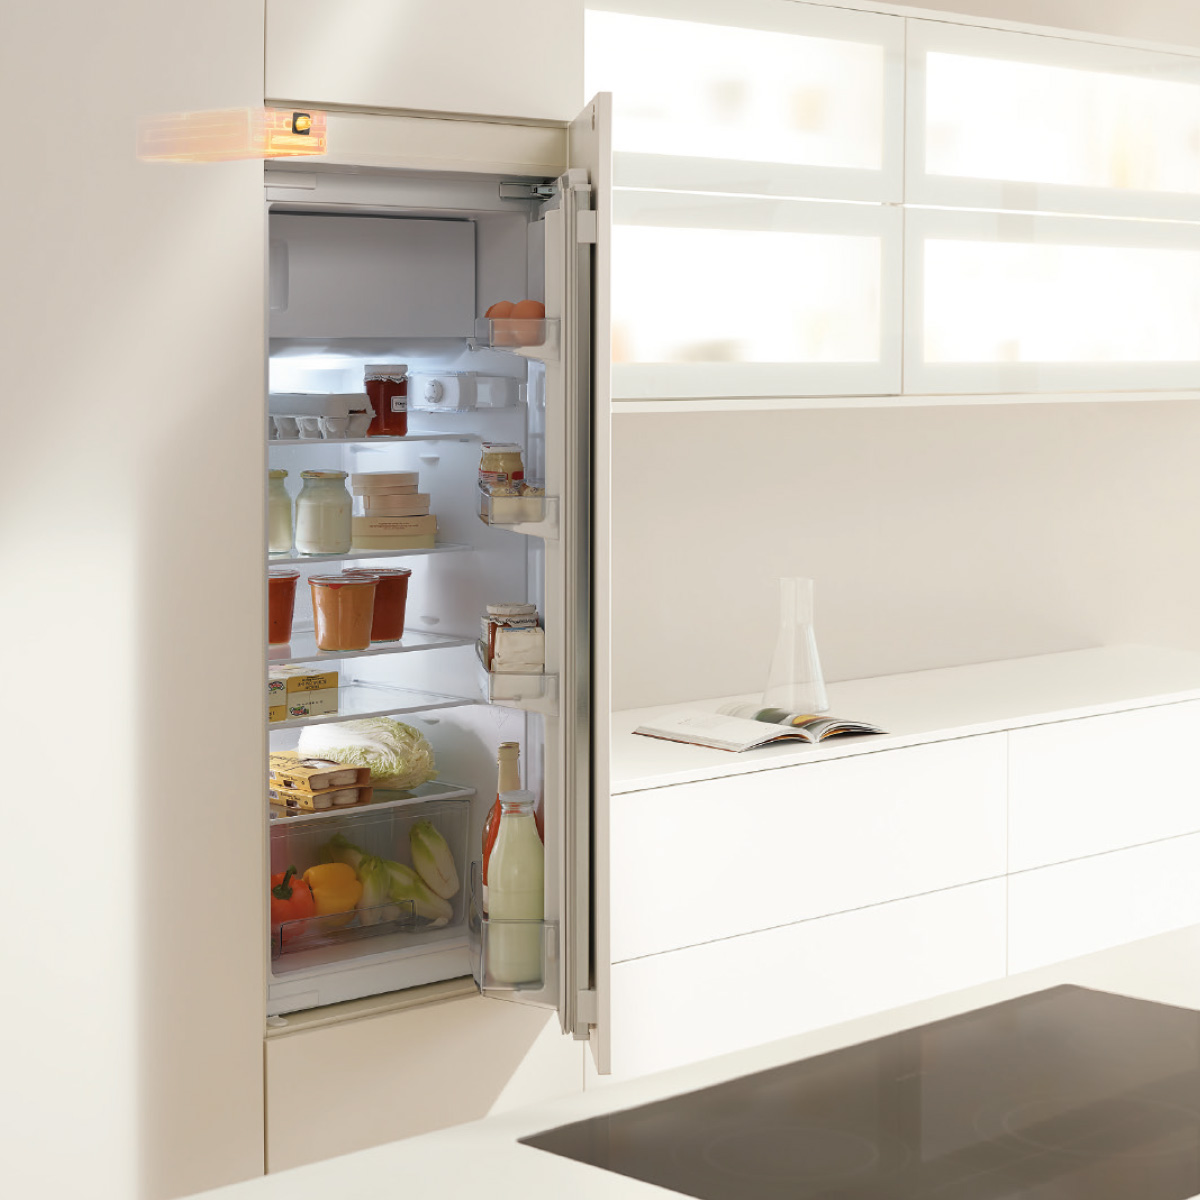 Servodrive Flex -apertura automatica de puertas lavavajillas y frigoríficos